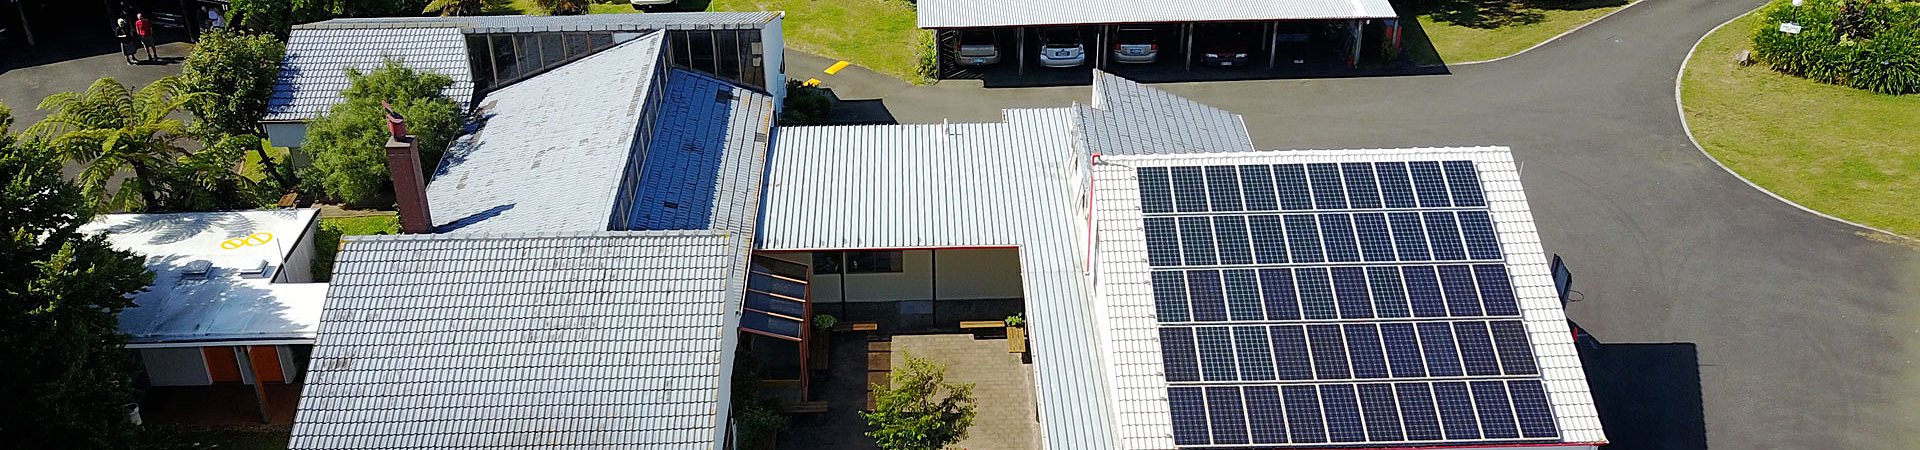 Our solar array